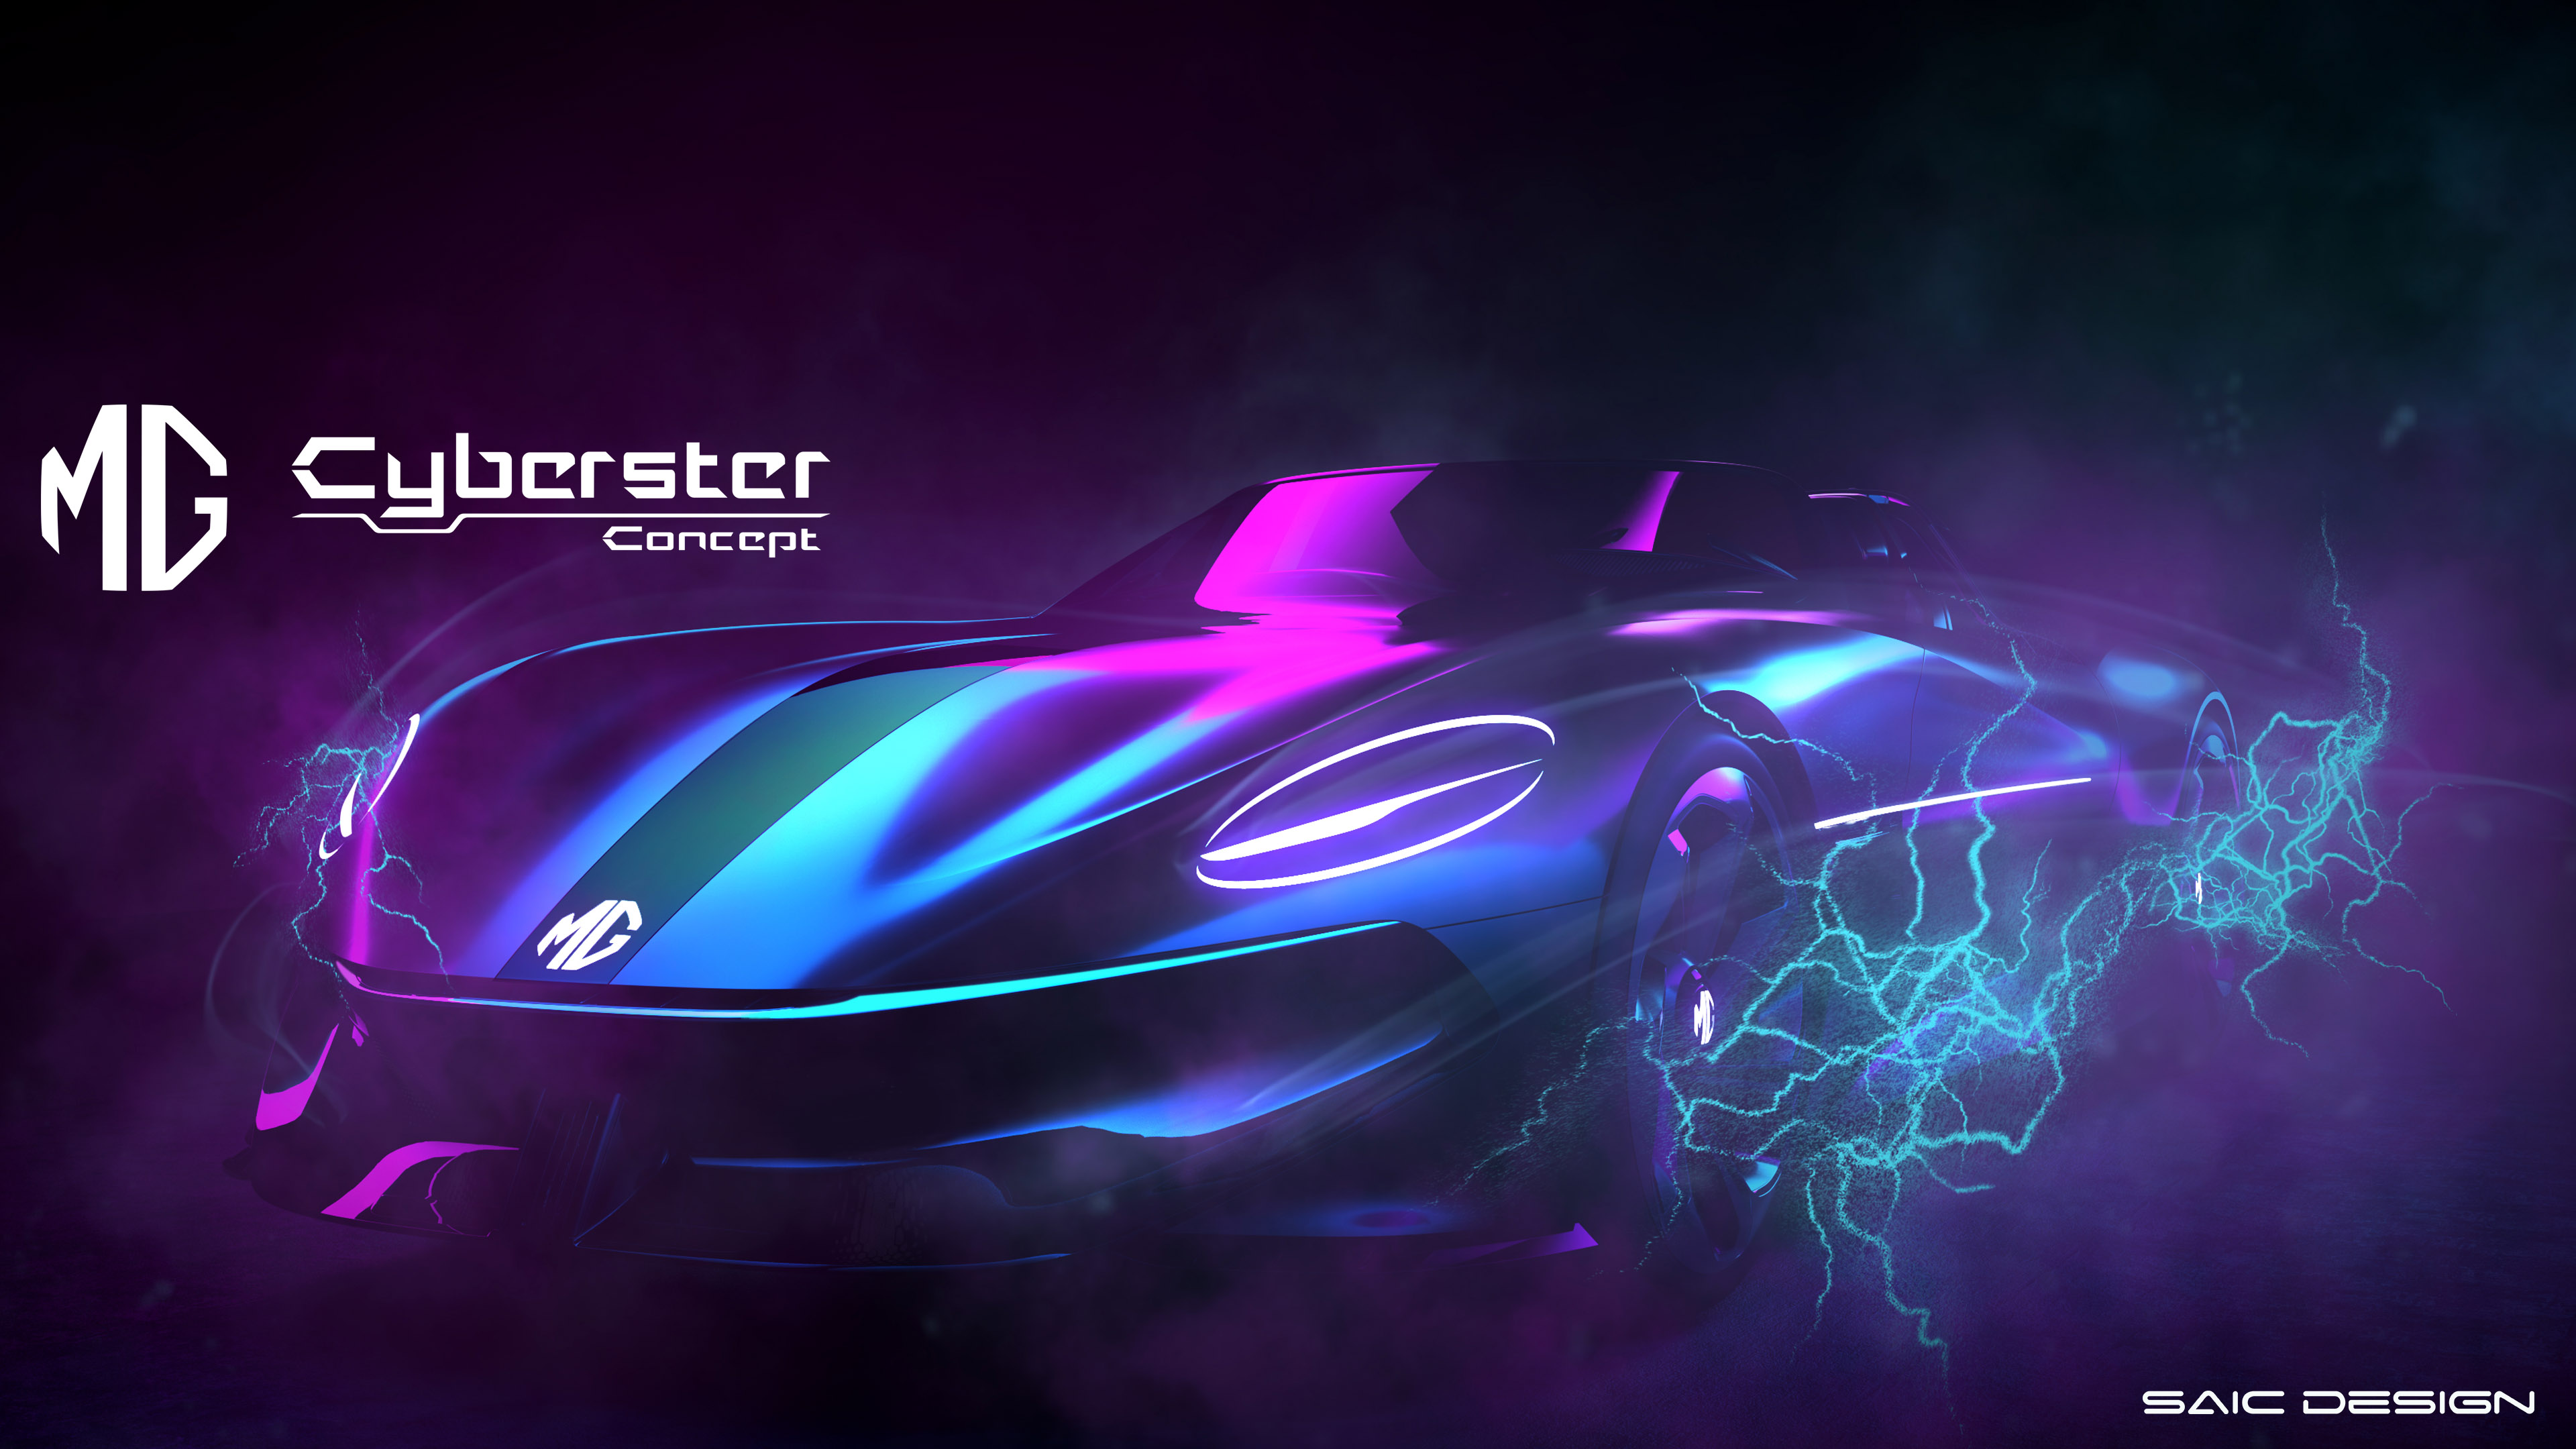 ’إم جي‘ تكشف عن سيارتها النموذجية Cyberster Concept